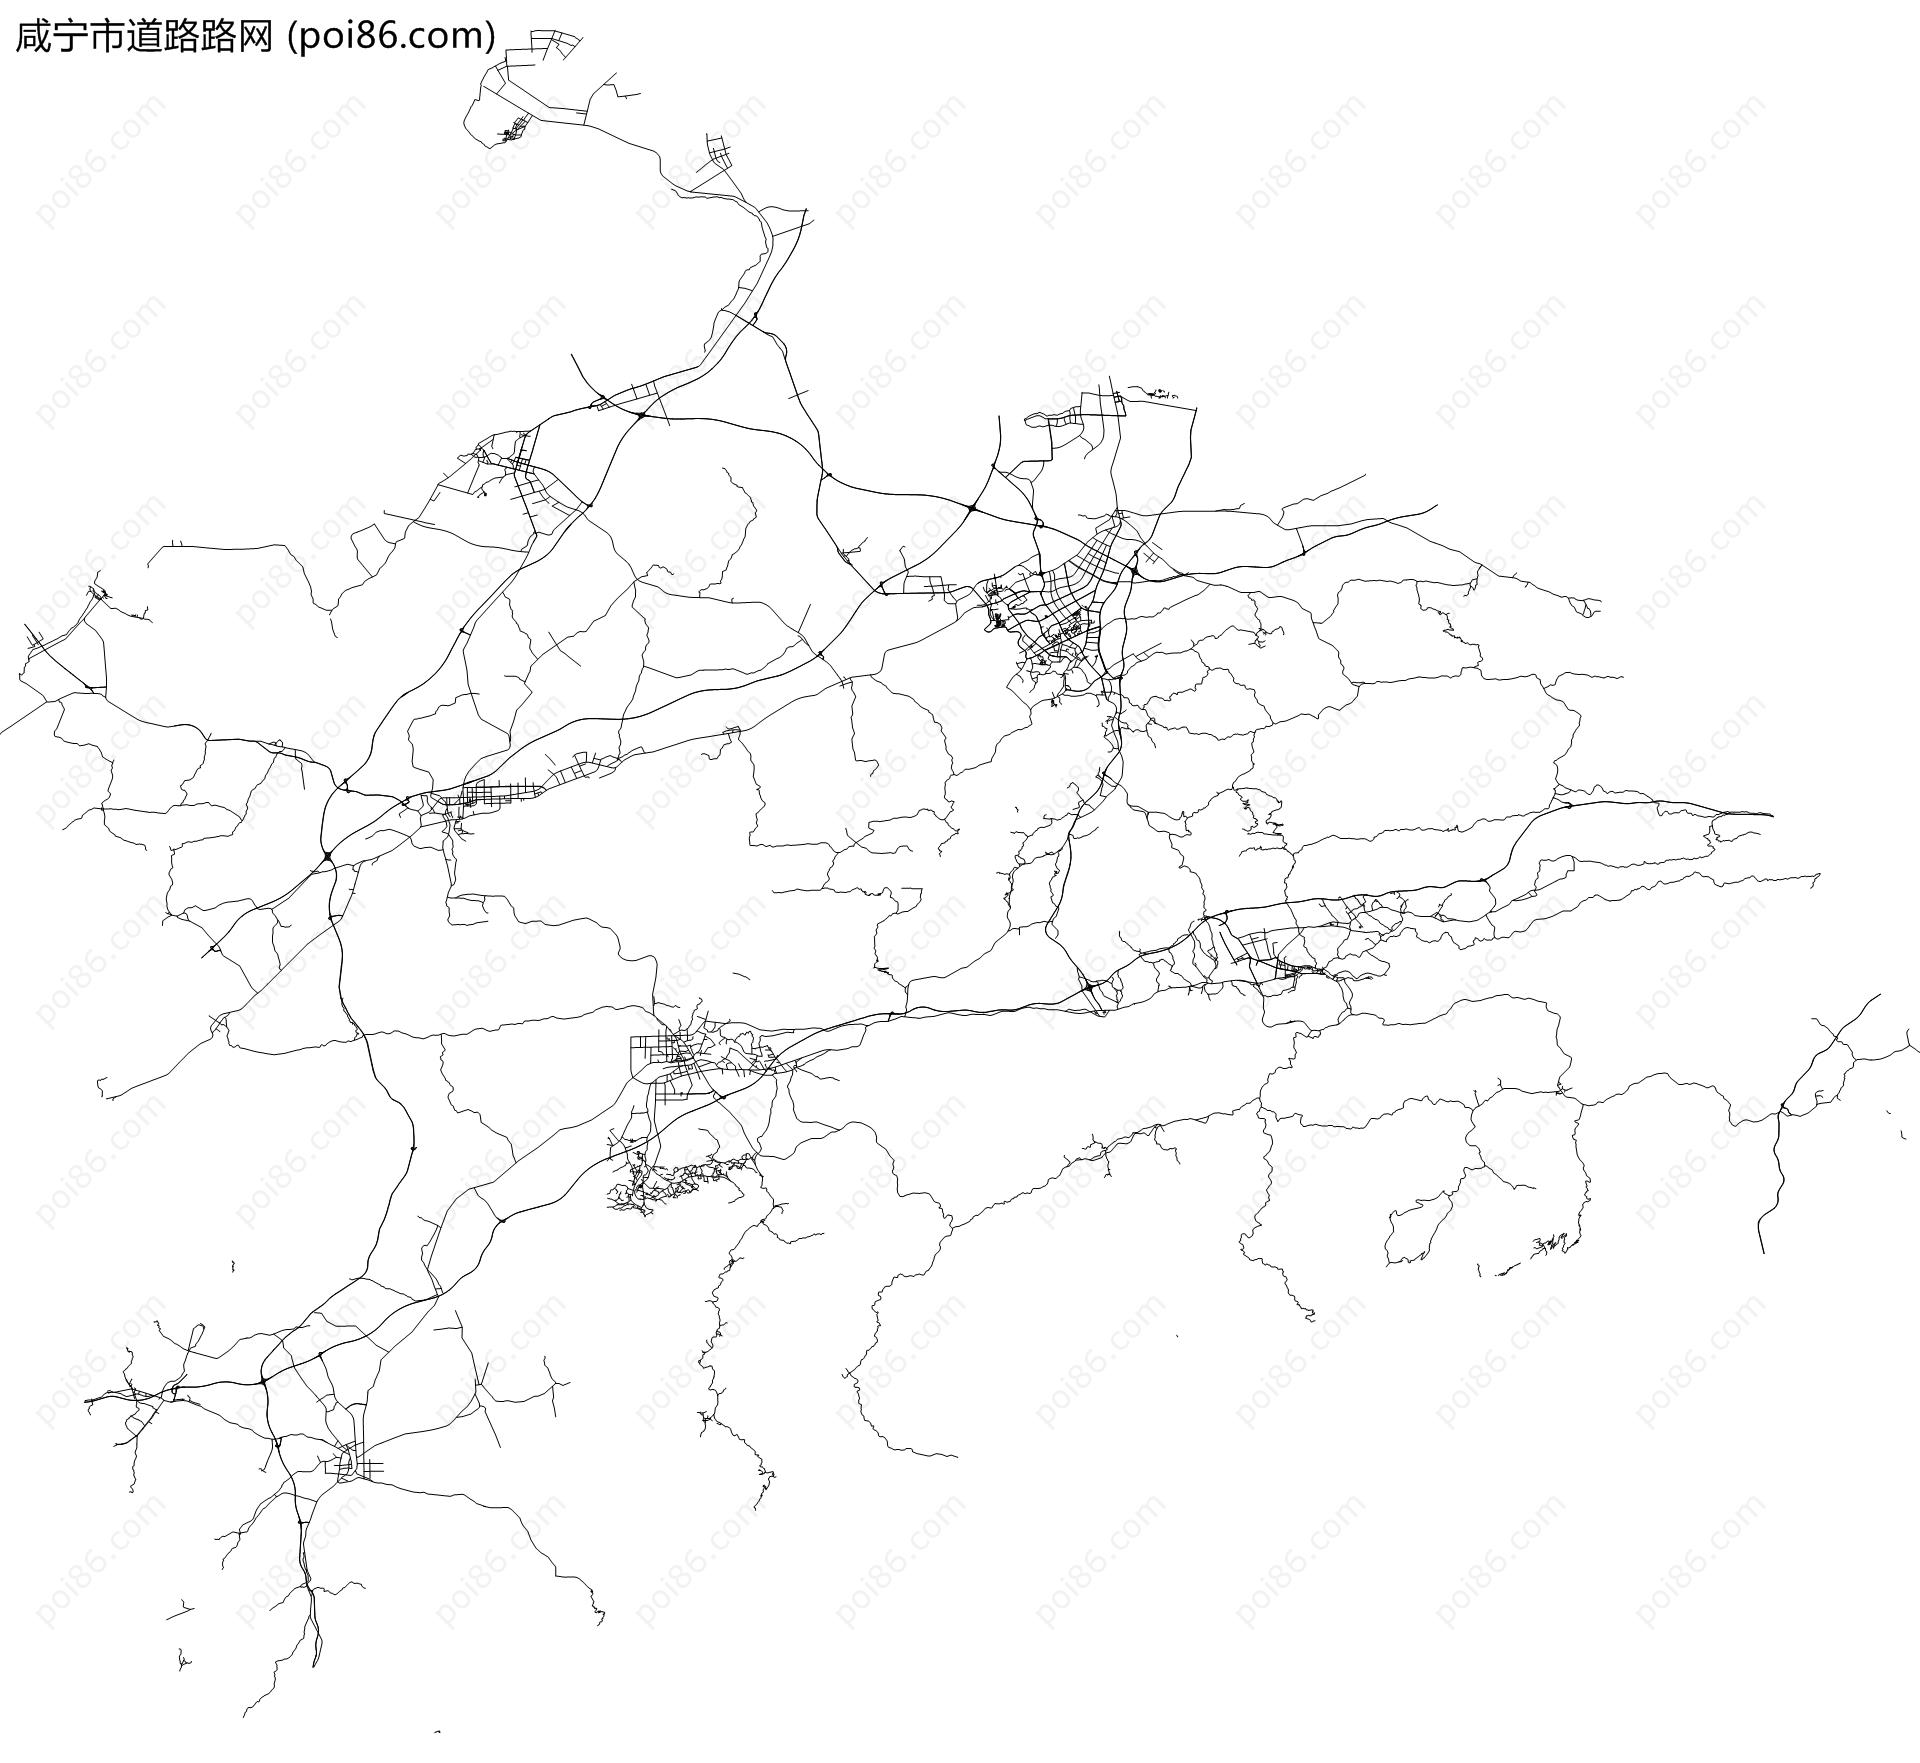 咸宁市道路路网地图